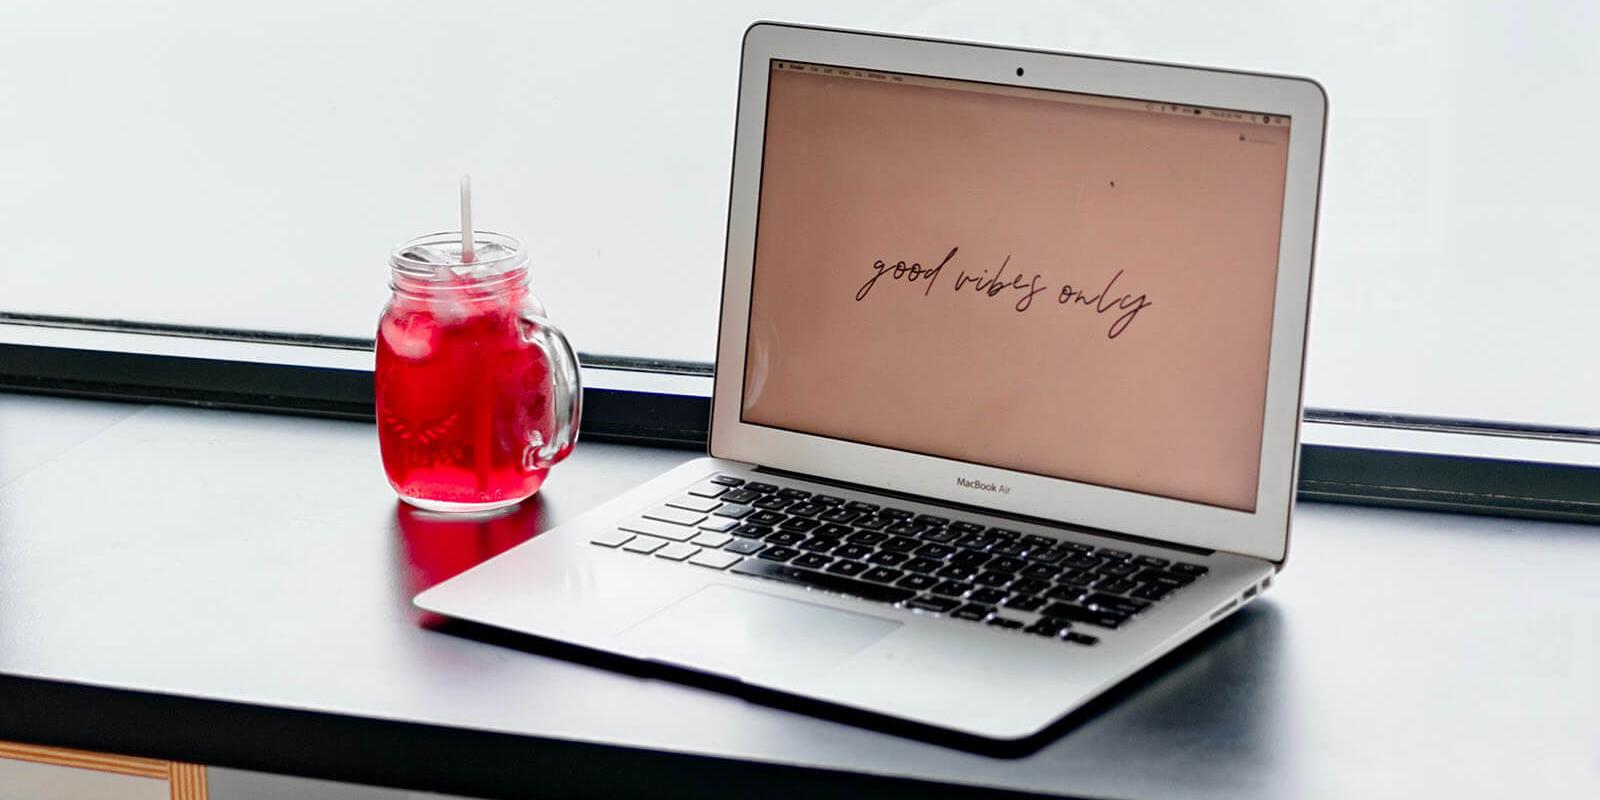 Notebook eines Bloggers mit rotem Getränk